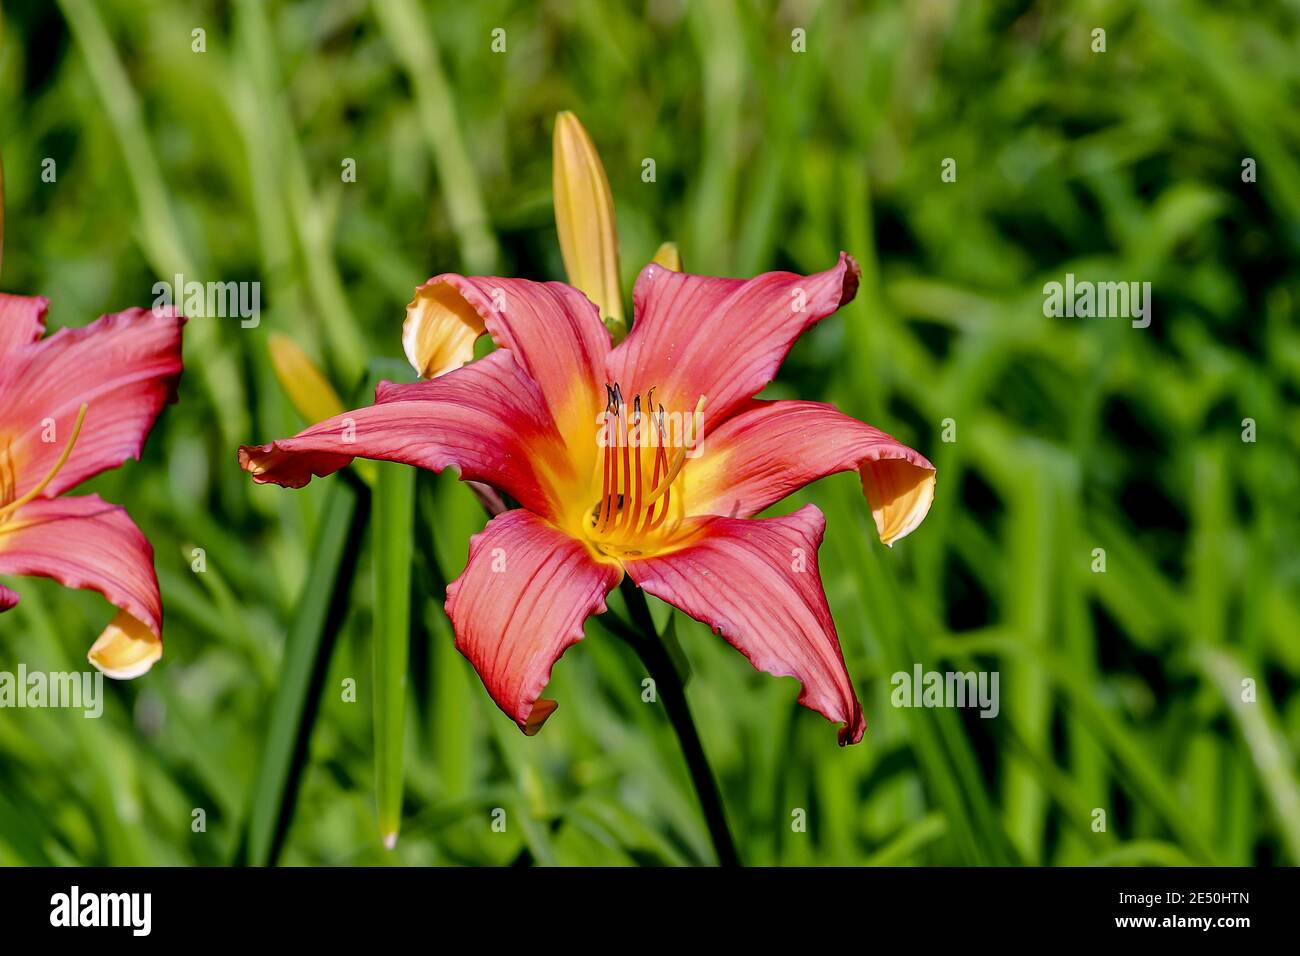 Flower of daylily named Catherine Woodberry, Hemerocallis, Liliaceae, Bavaria, Germany Stock Photo